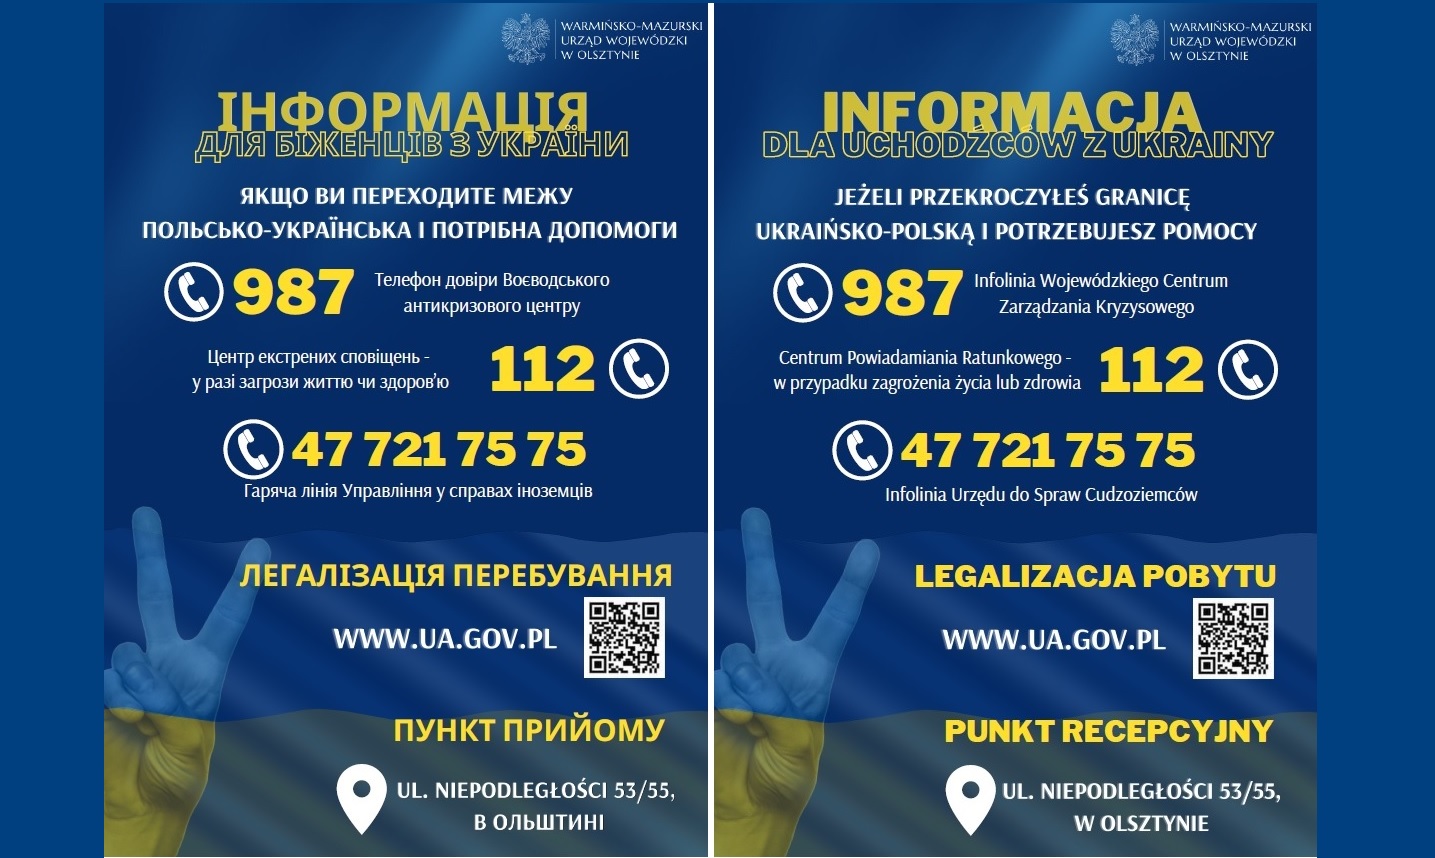 Informazioni sul soggiorno in Polonia di persone in fuga dall'Ucraina